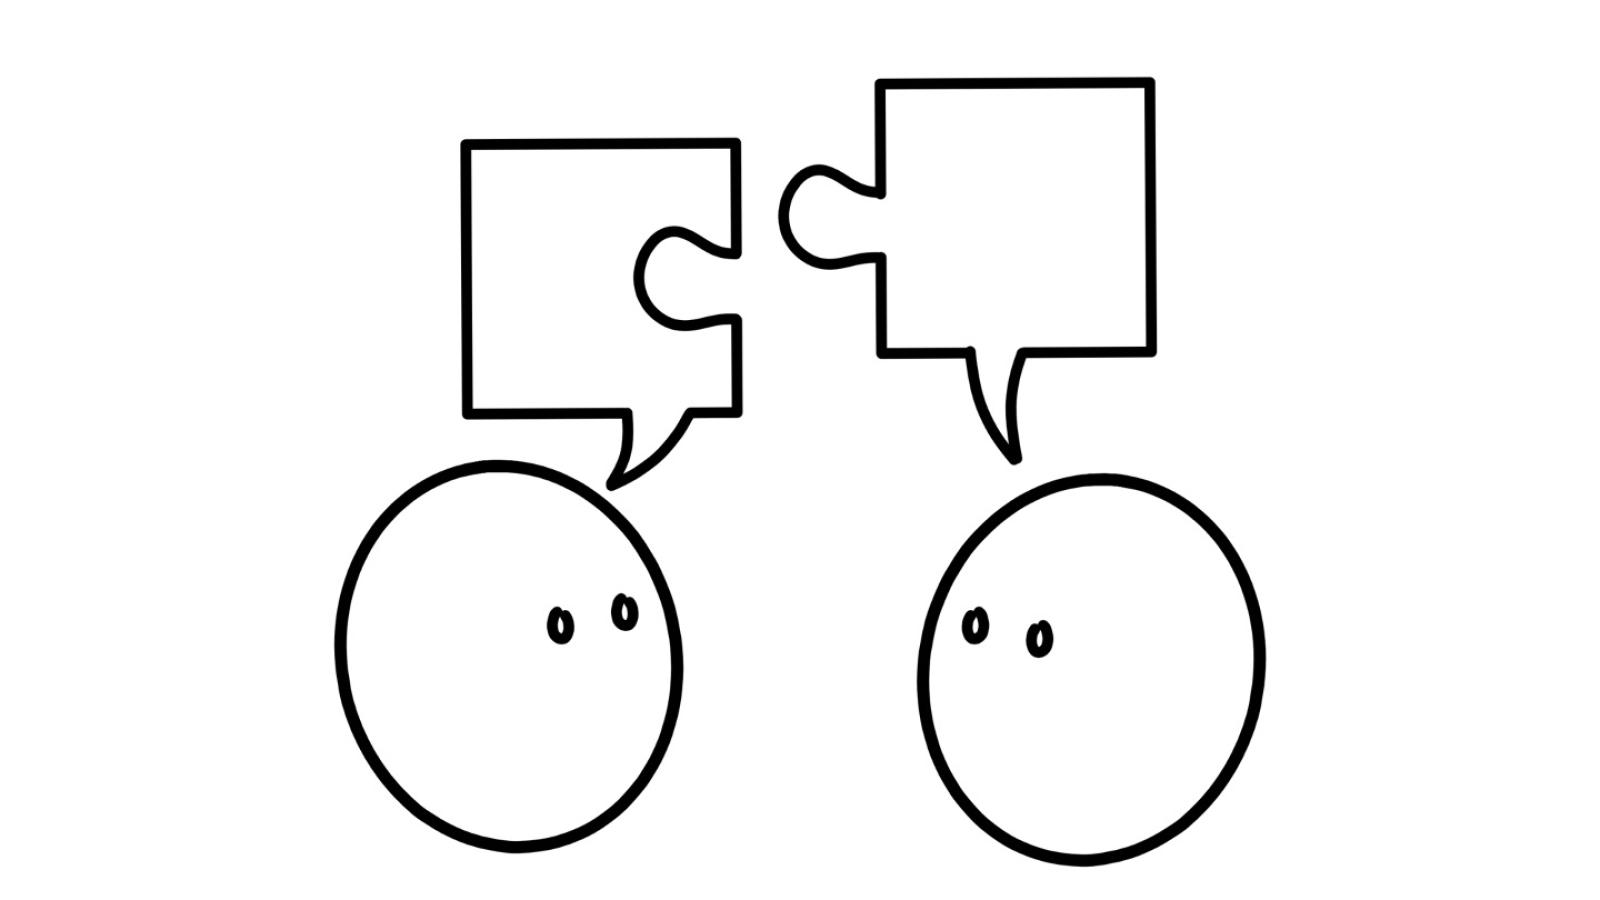 Illustration zeigt zwei symbolhafte Köpfe mit Augen, die sich anschauen und je eine Sprechblase über dem Kopf haben. Diese Sprechblasen sind geformt wie Puzzleteile, die sich passend zusammensetzen lassen.